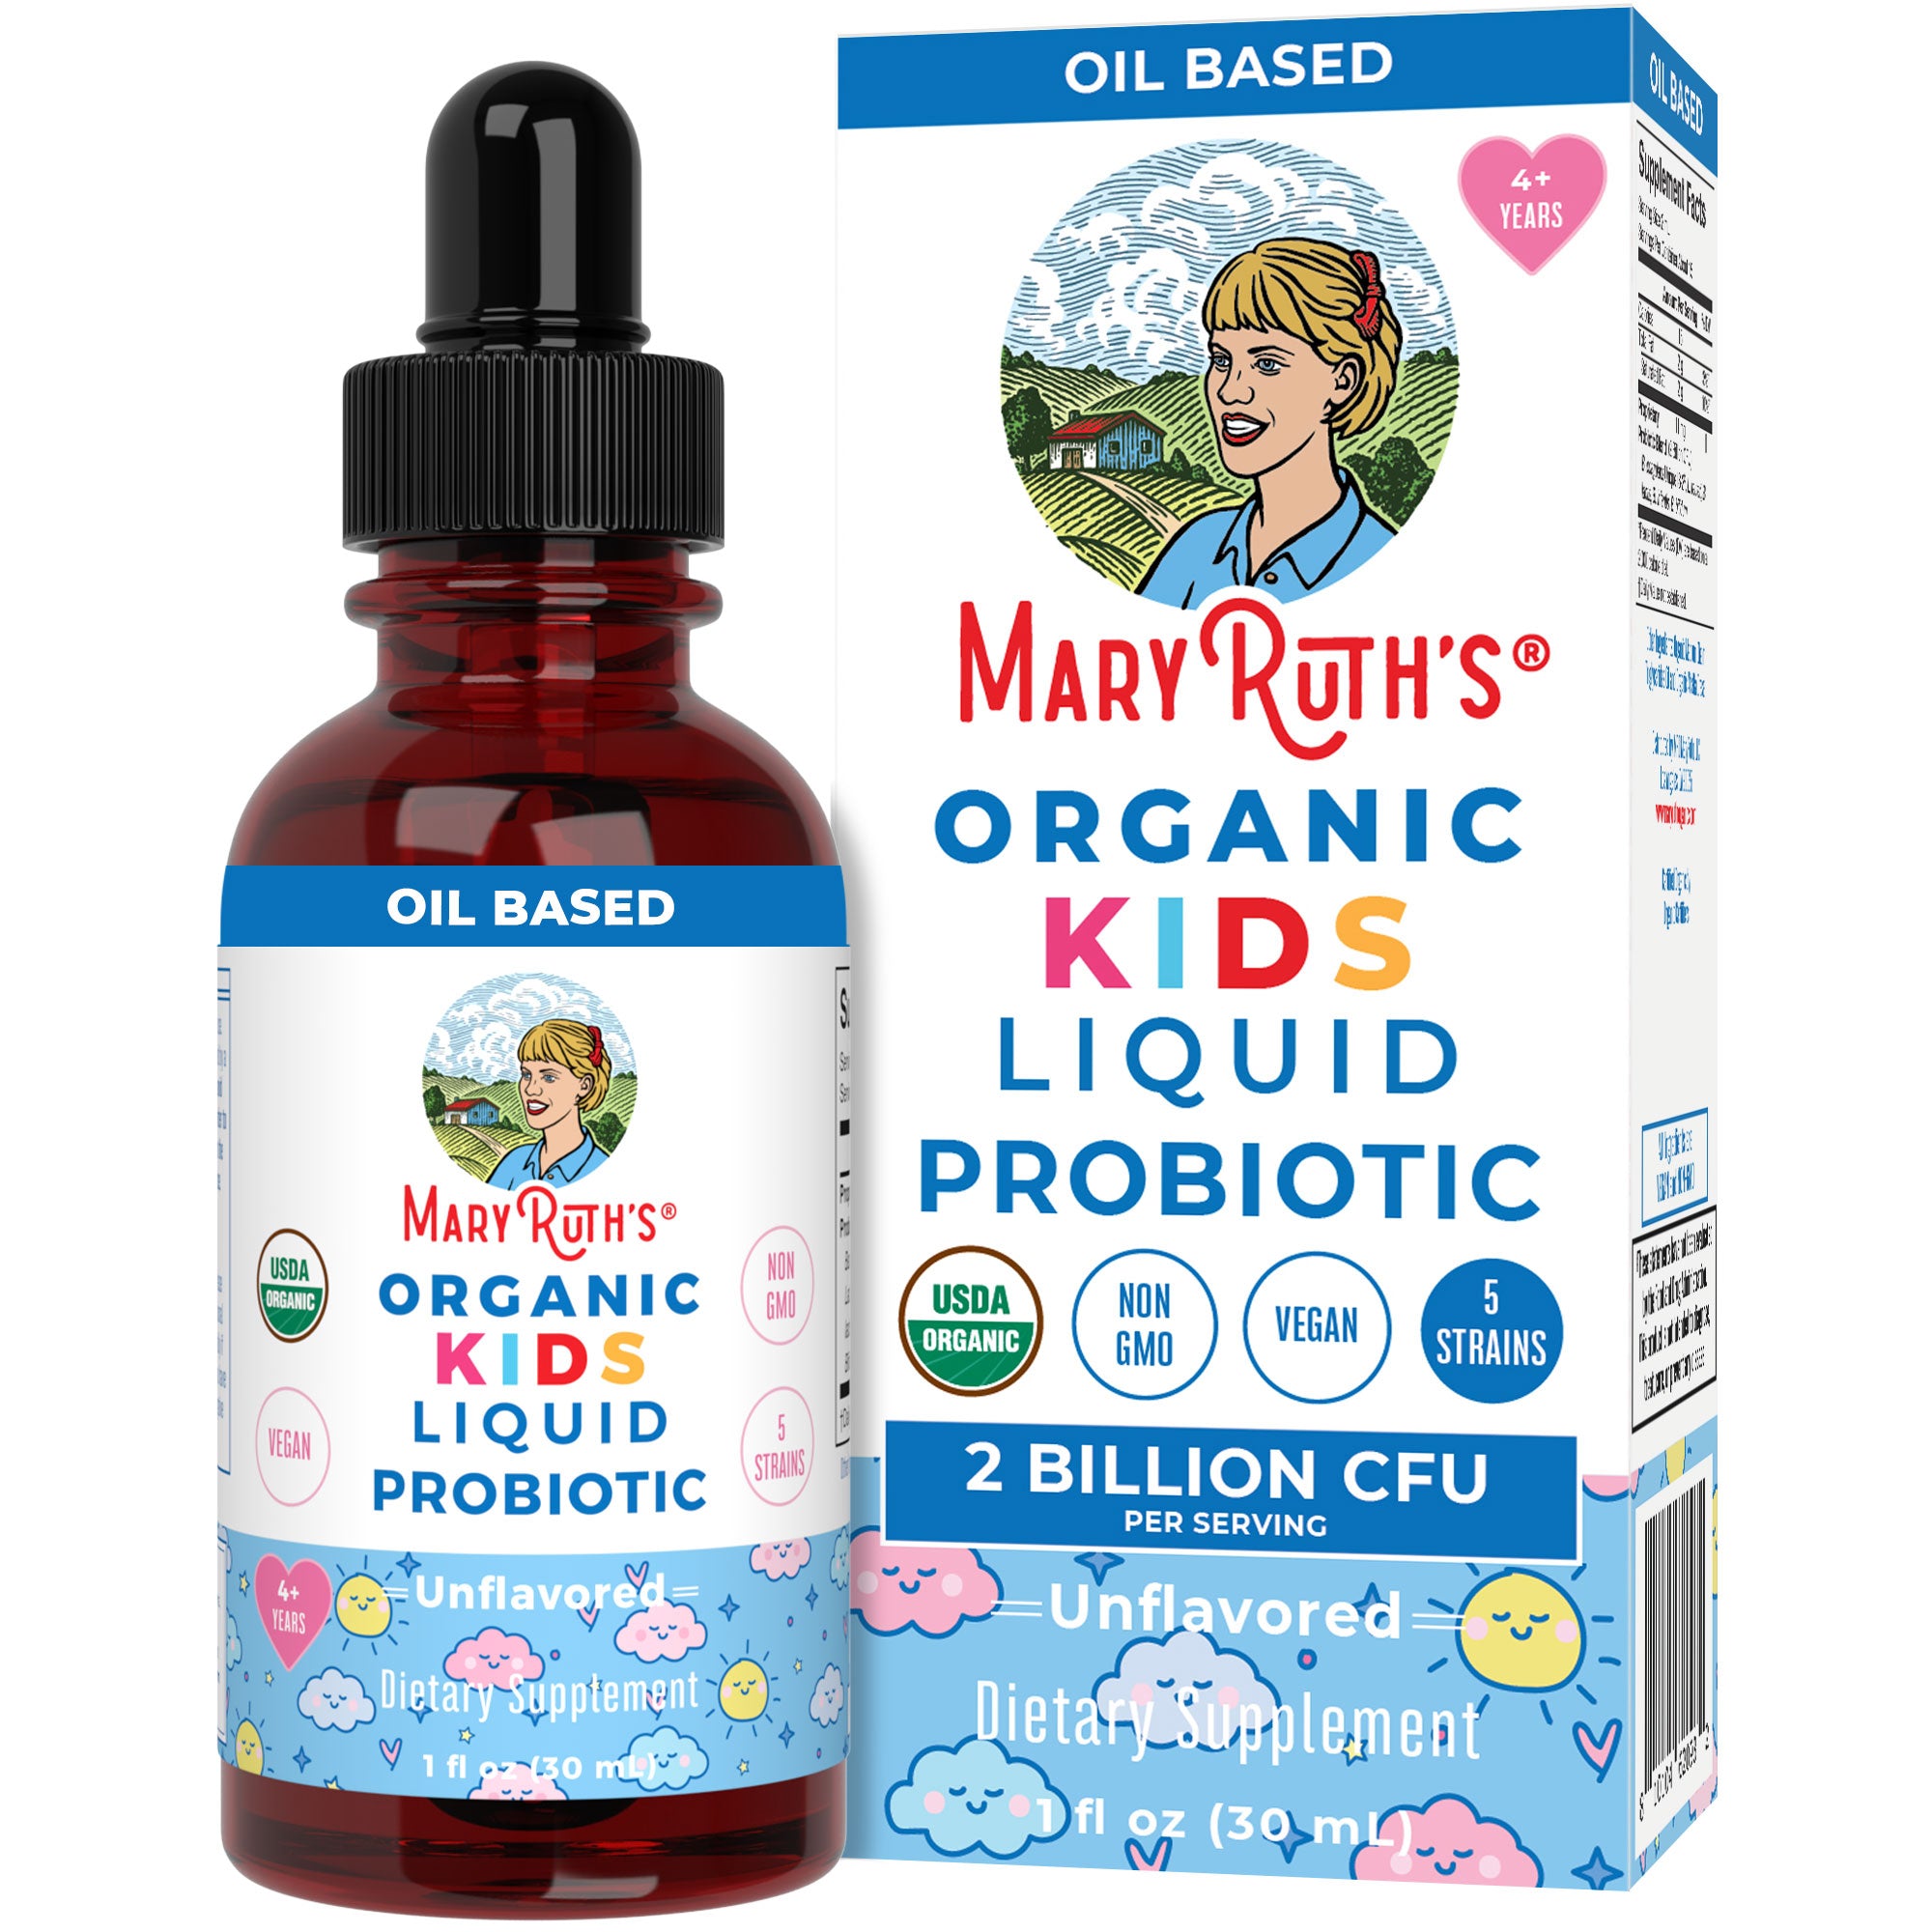 Organic Kids Liquid Probiotic